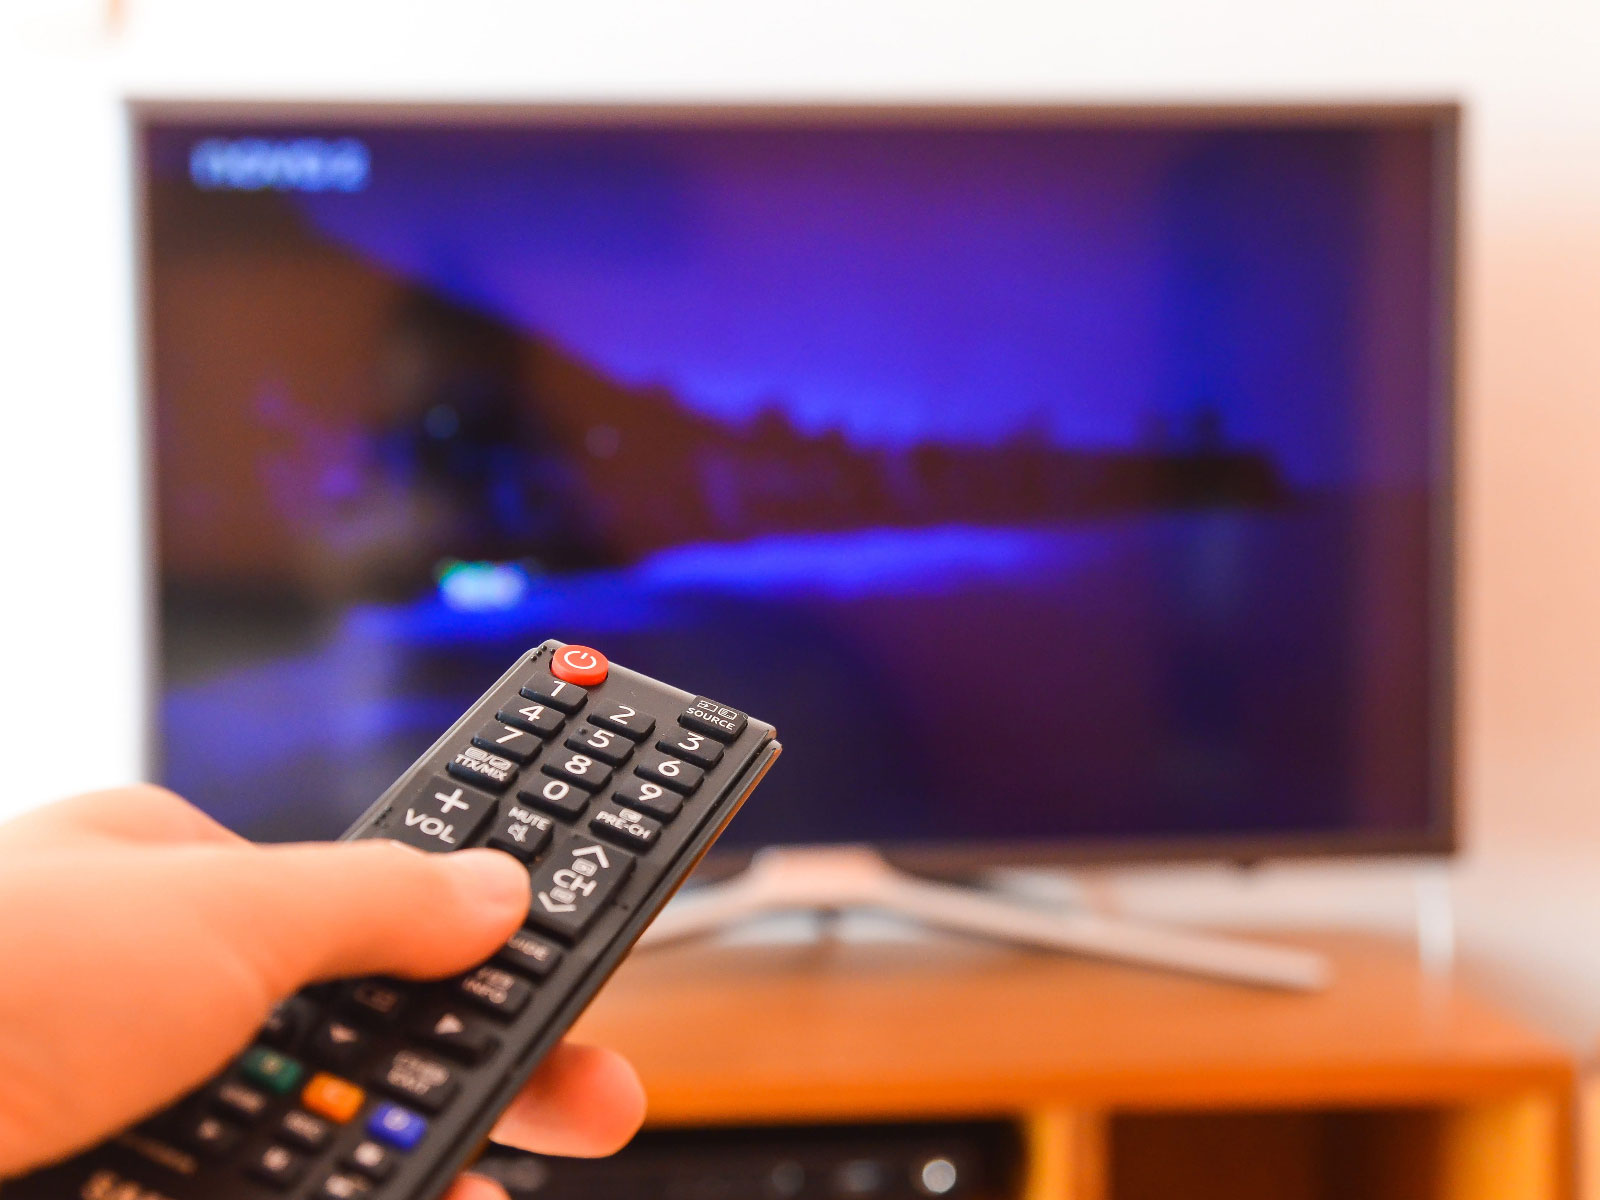 gledanje tv-a - tv i daljinski - daljinski televizora - televizor - smart tv - smart televizor